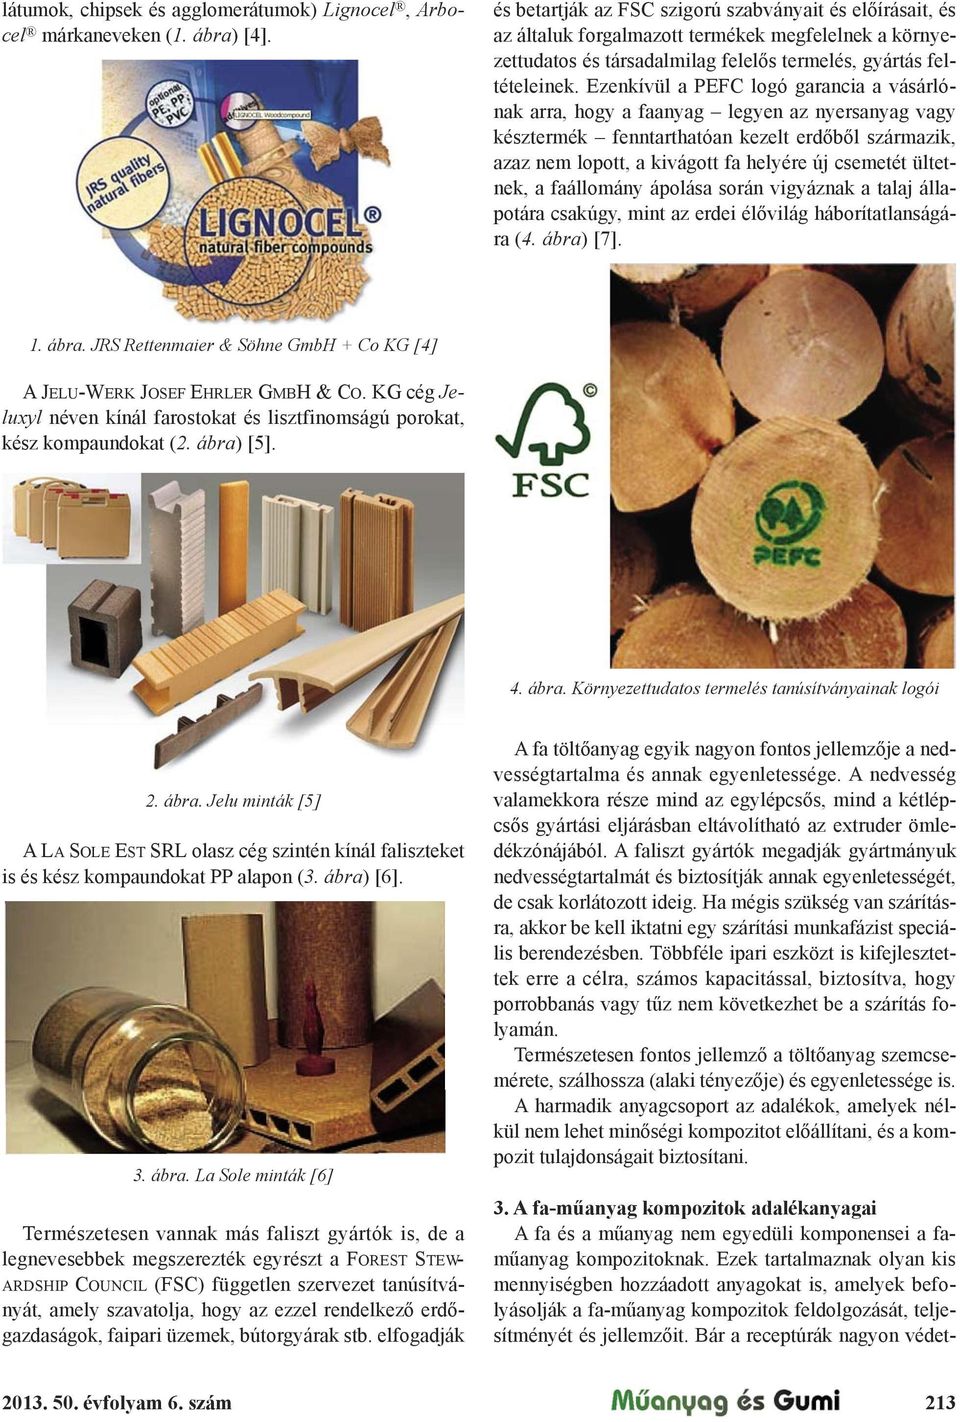 Ezenkívül a PEFC logó garancia a vásárlónak arra, hogy a faanyag legyen az nyersanyag vagy késztermék fenntarthatóan kezelt erd"b"l származik, azaz nem lopott, a kivágott fa helyére új csemetét